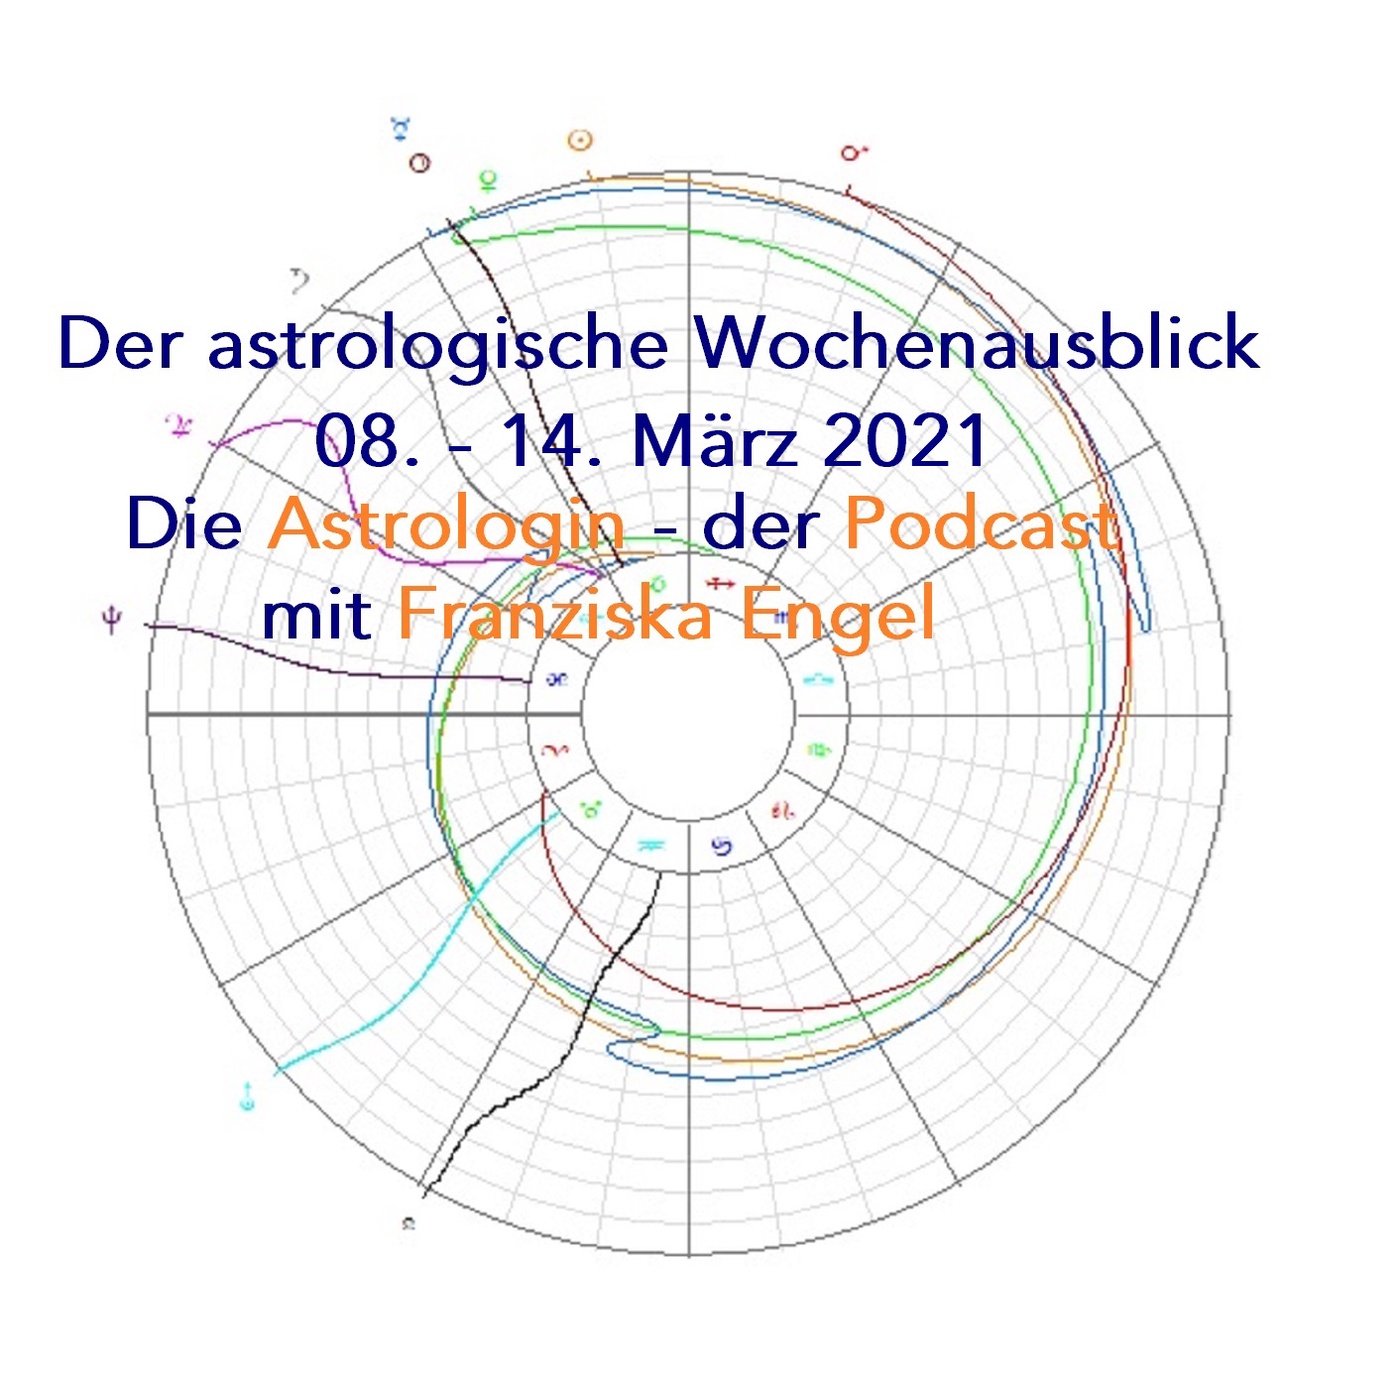 Astrologischer Wochenausblick 08. - 14. März 2021